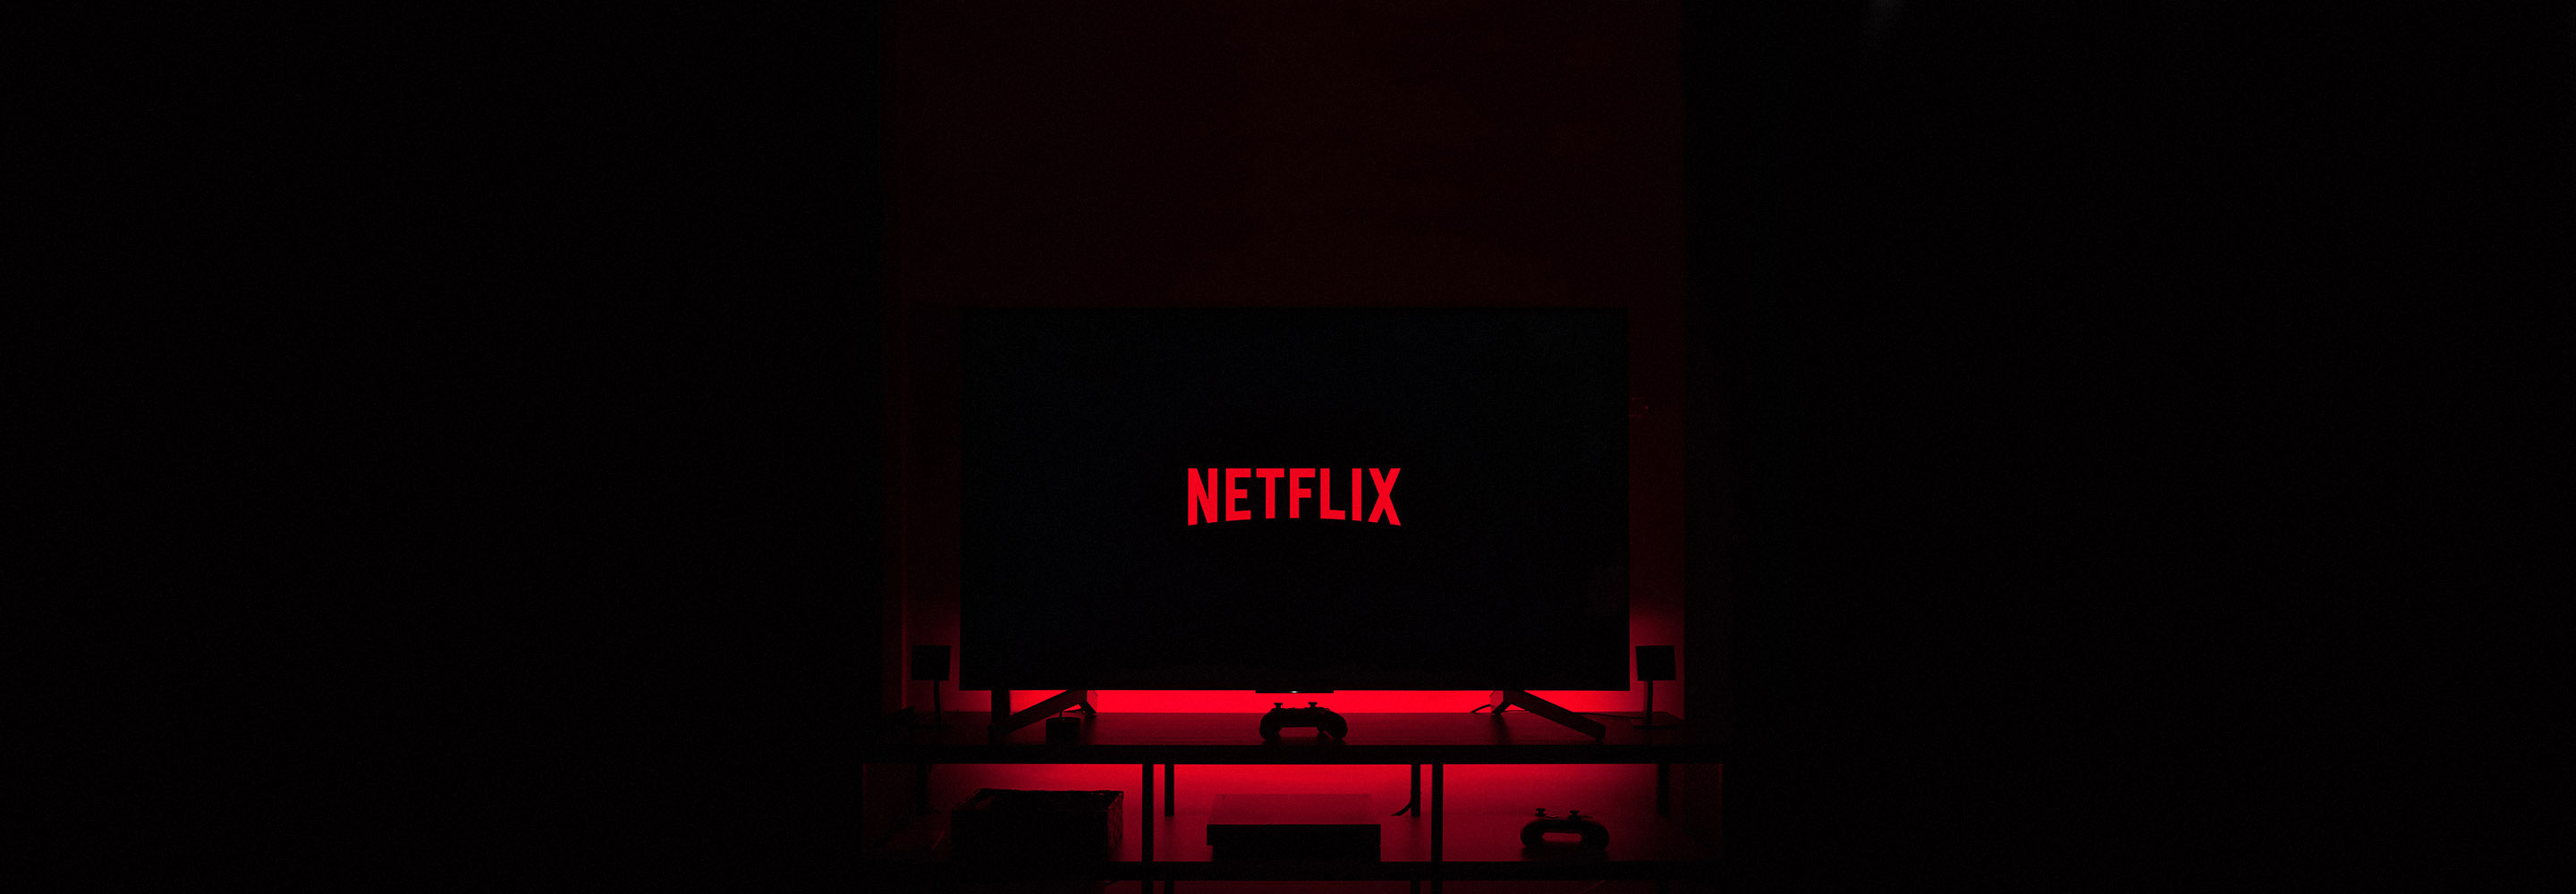 Еда, шпионы, пандемия: 12 документальных сериалов Netflix